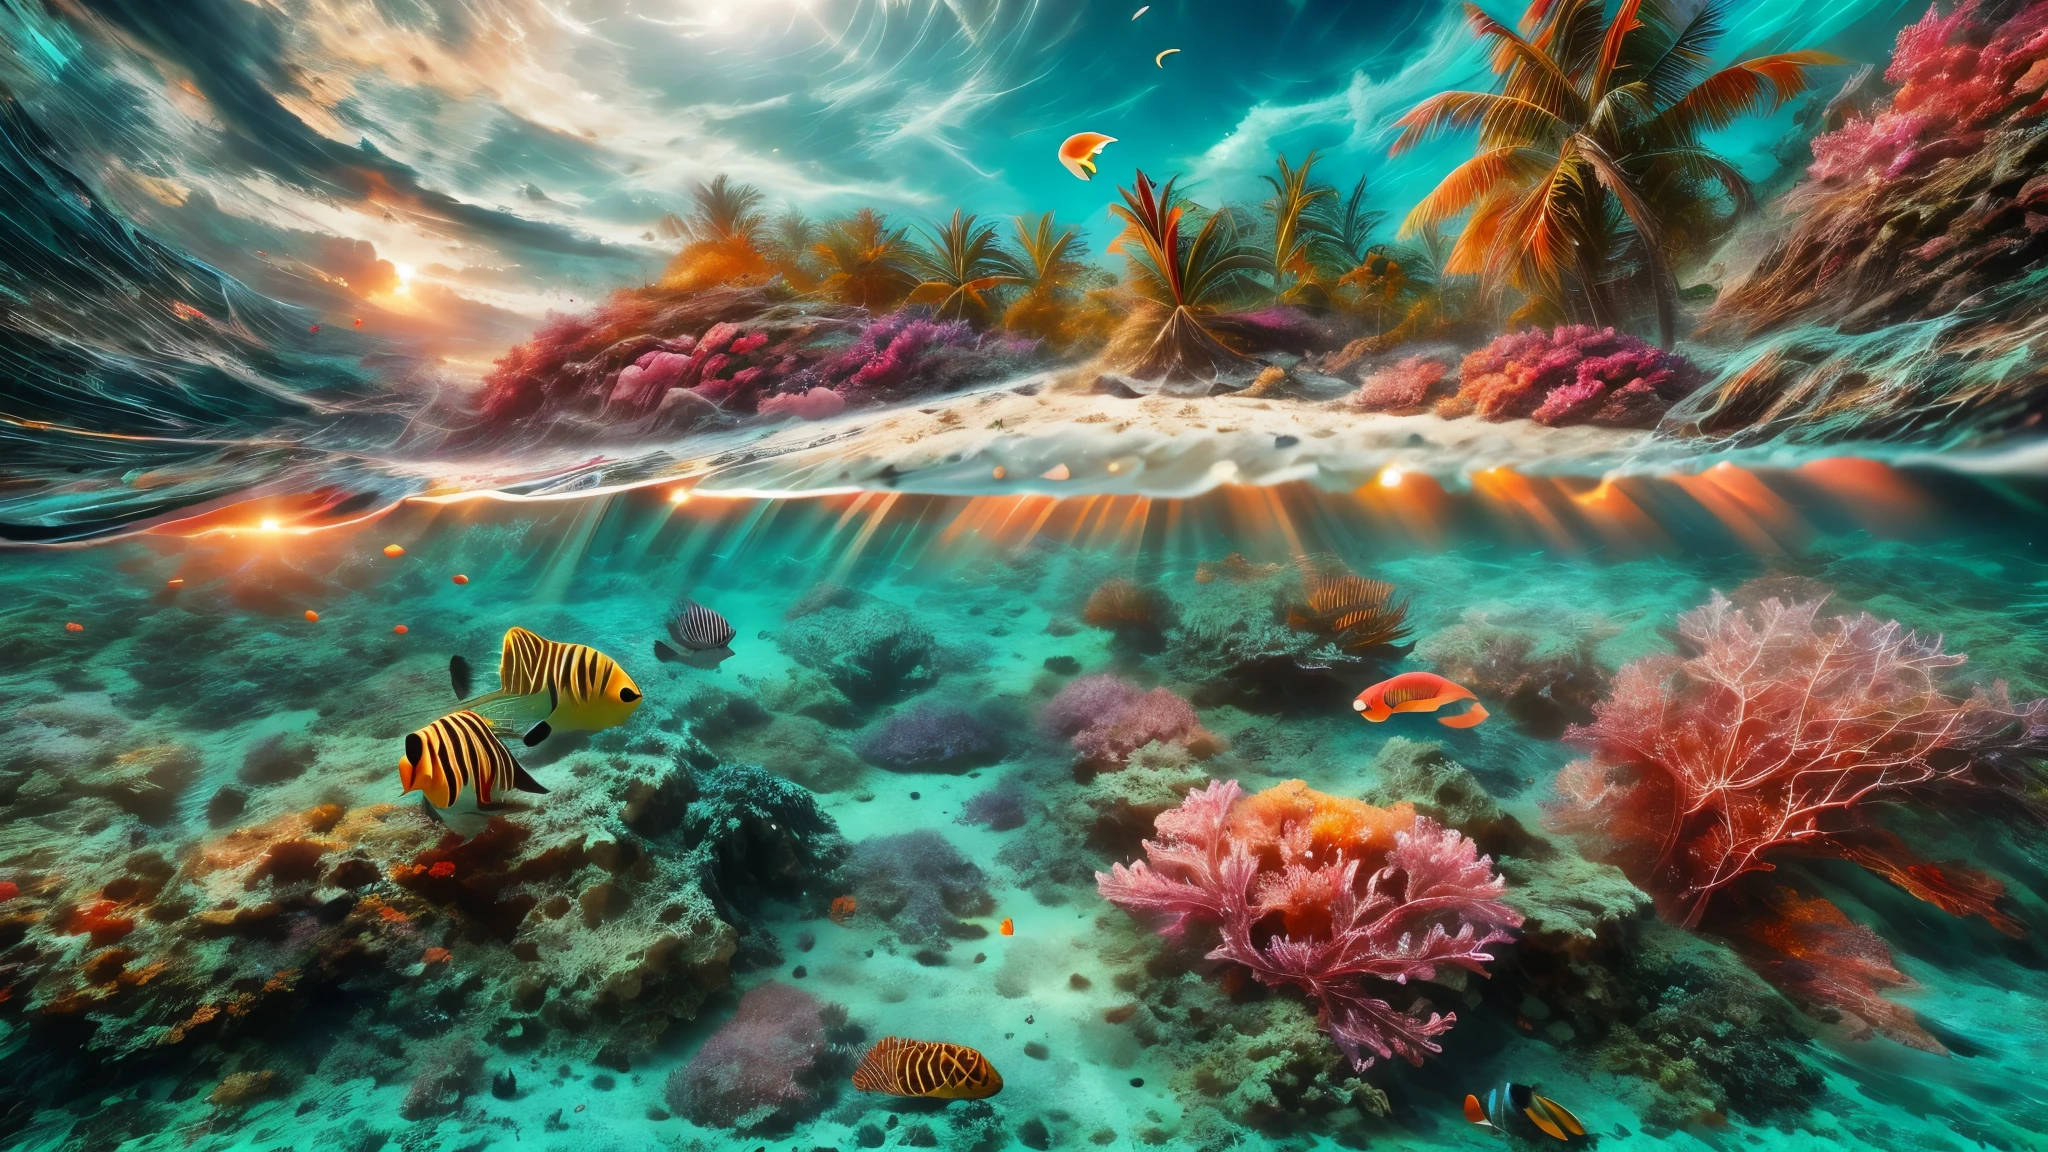 água turquesa cristalina, recifes de corais vibrantes, Paraíso subaquático, pássaros tropicais, praias com palmeiras, pôr do sol de tirar o fôlego, atmosfera tranquila, brilho etéreo, Beleza surreal